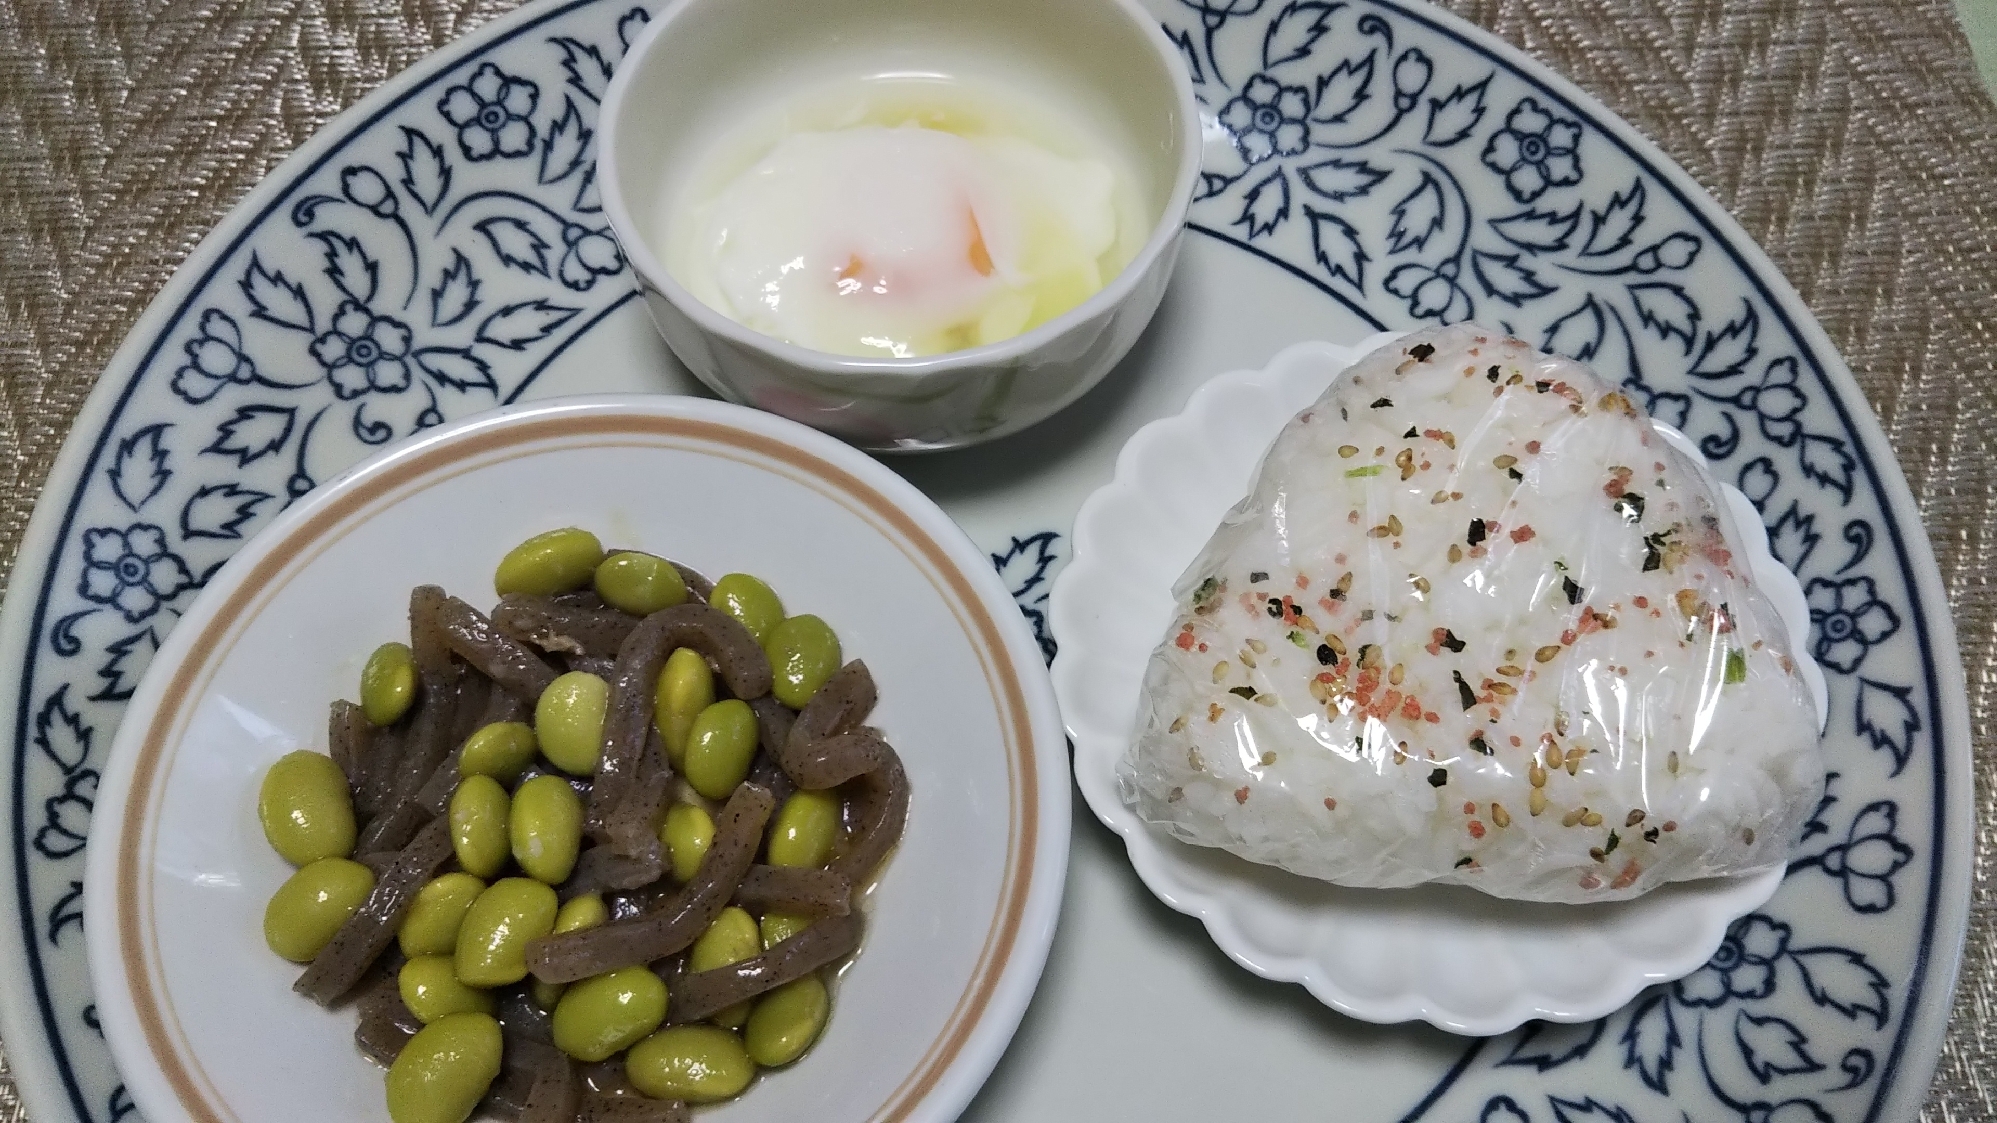 温泉卵と枝豆こんにゃく煮とおにぎりの朝食プレート☆